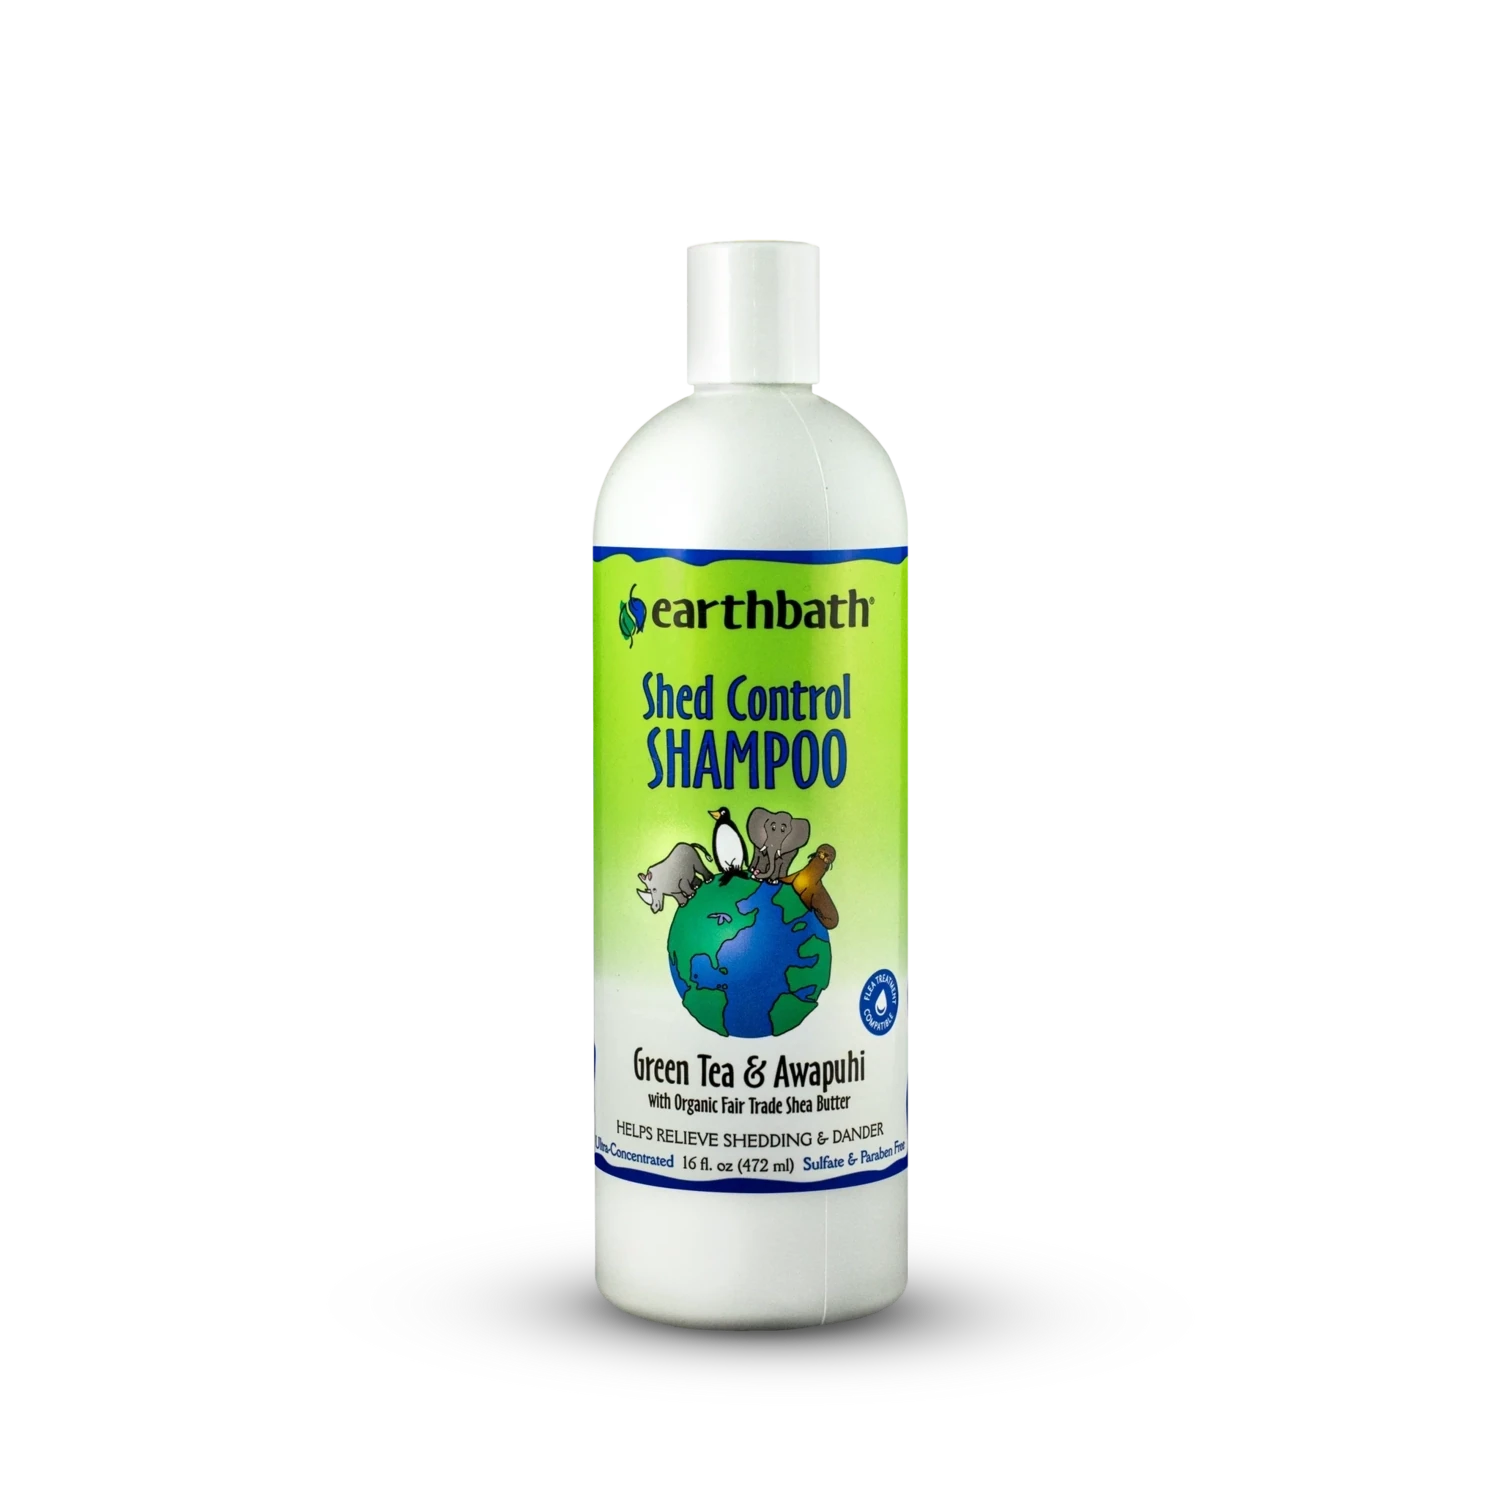 Earthbath - Shed Control Shampoo 16oz